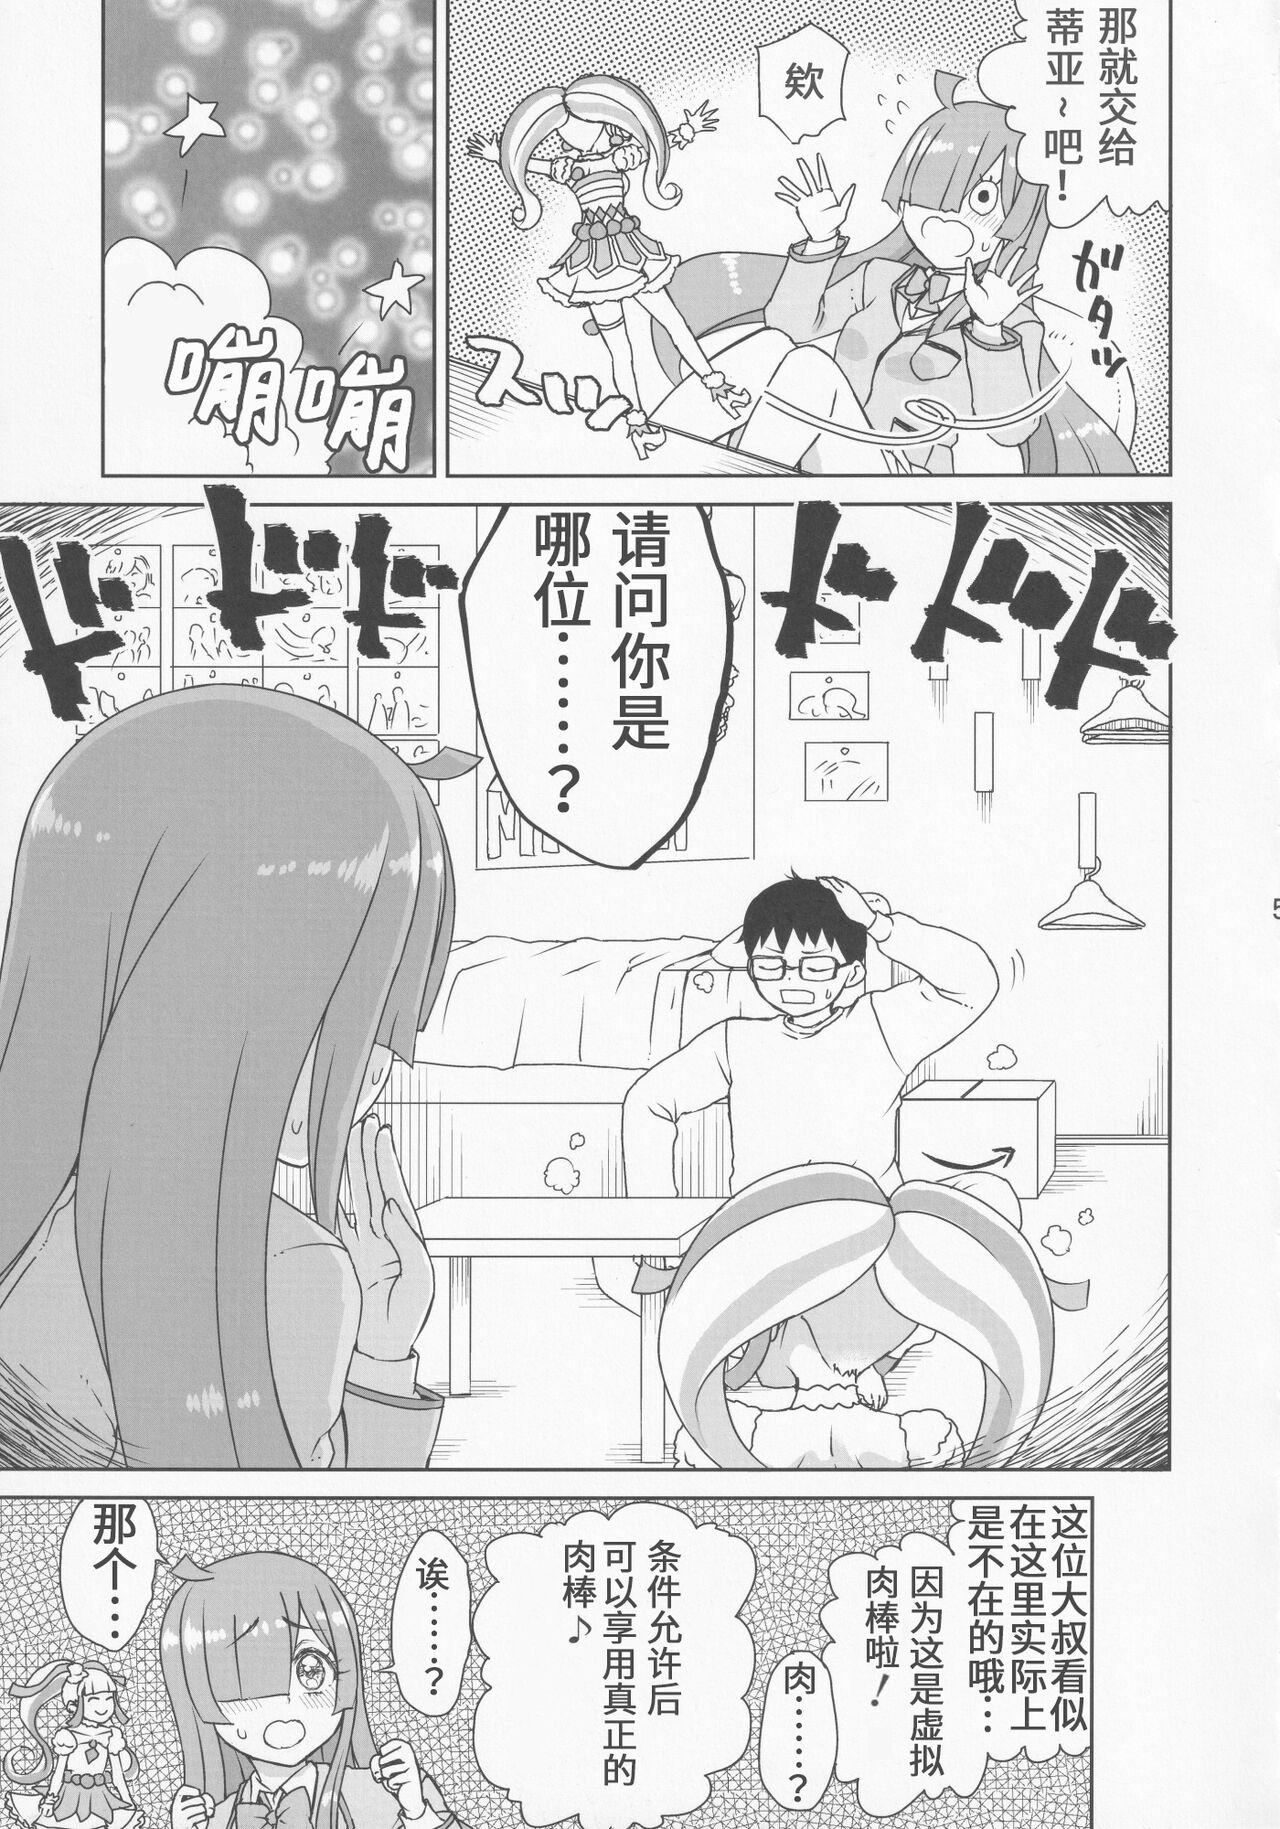 Beautiful Kimi no Na wa - Kiratto pri chan Adult Toys - Page 7